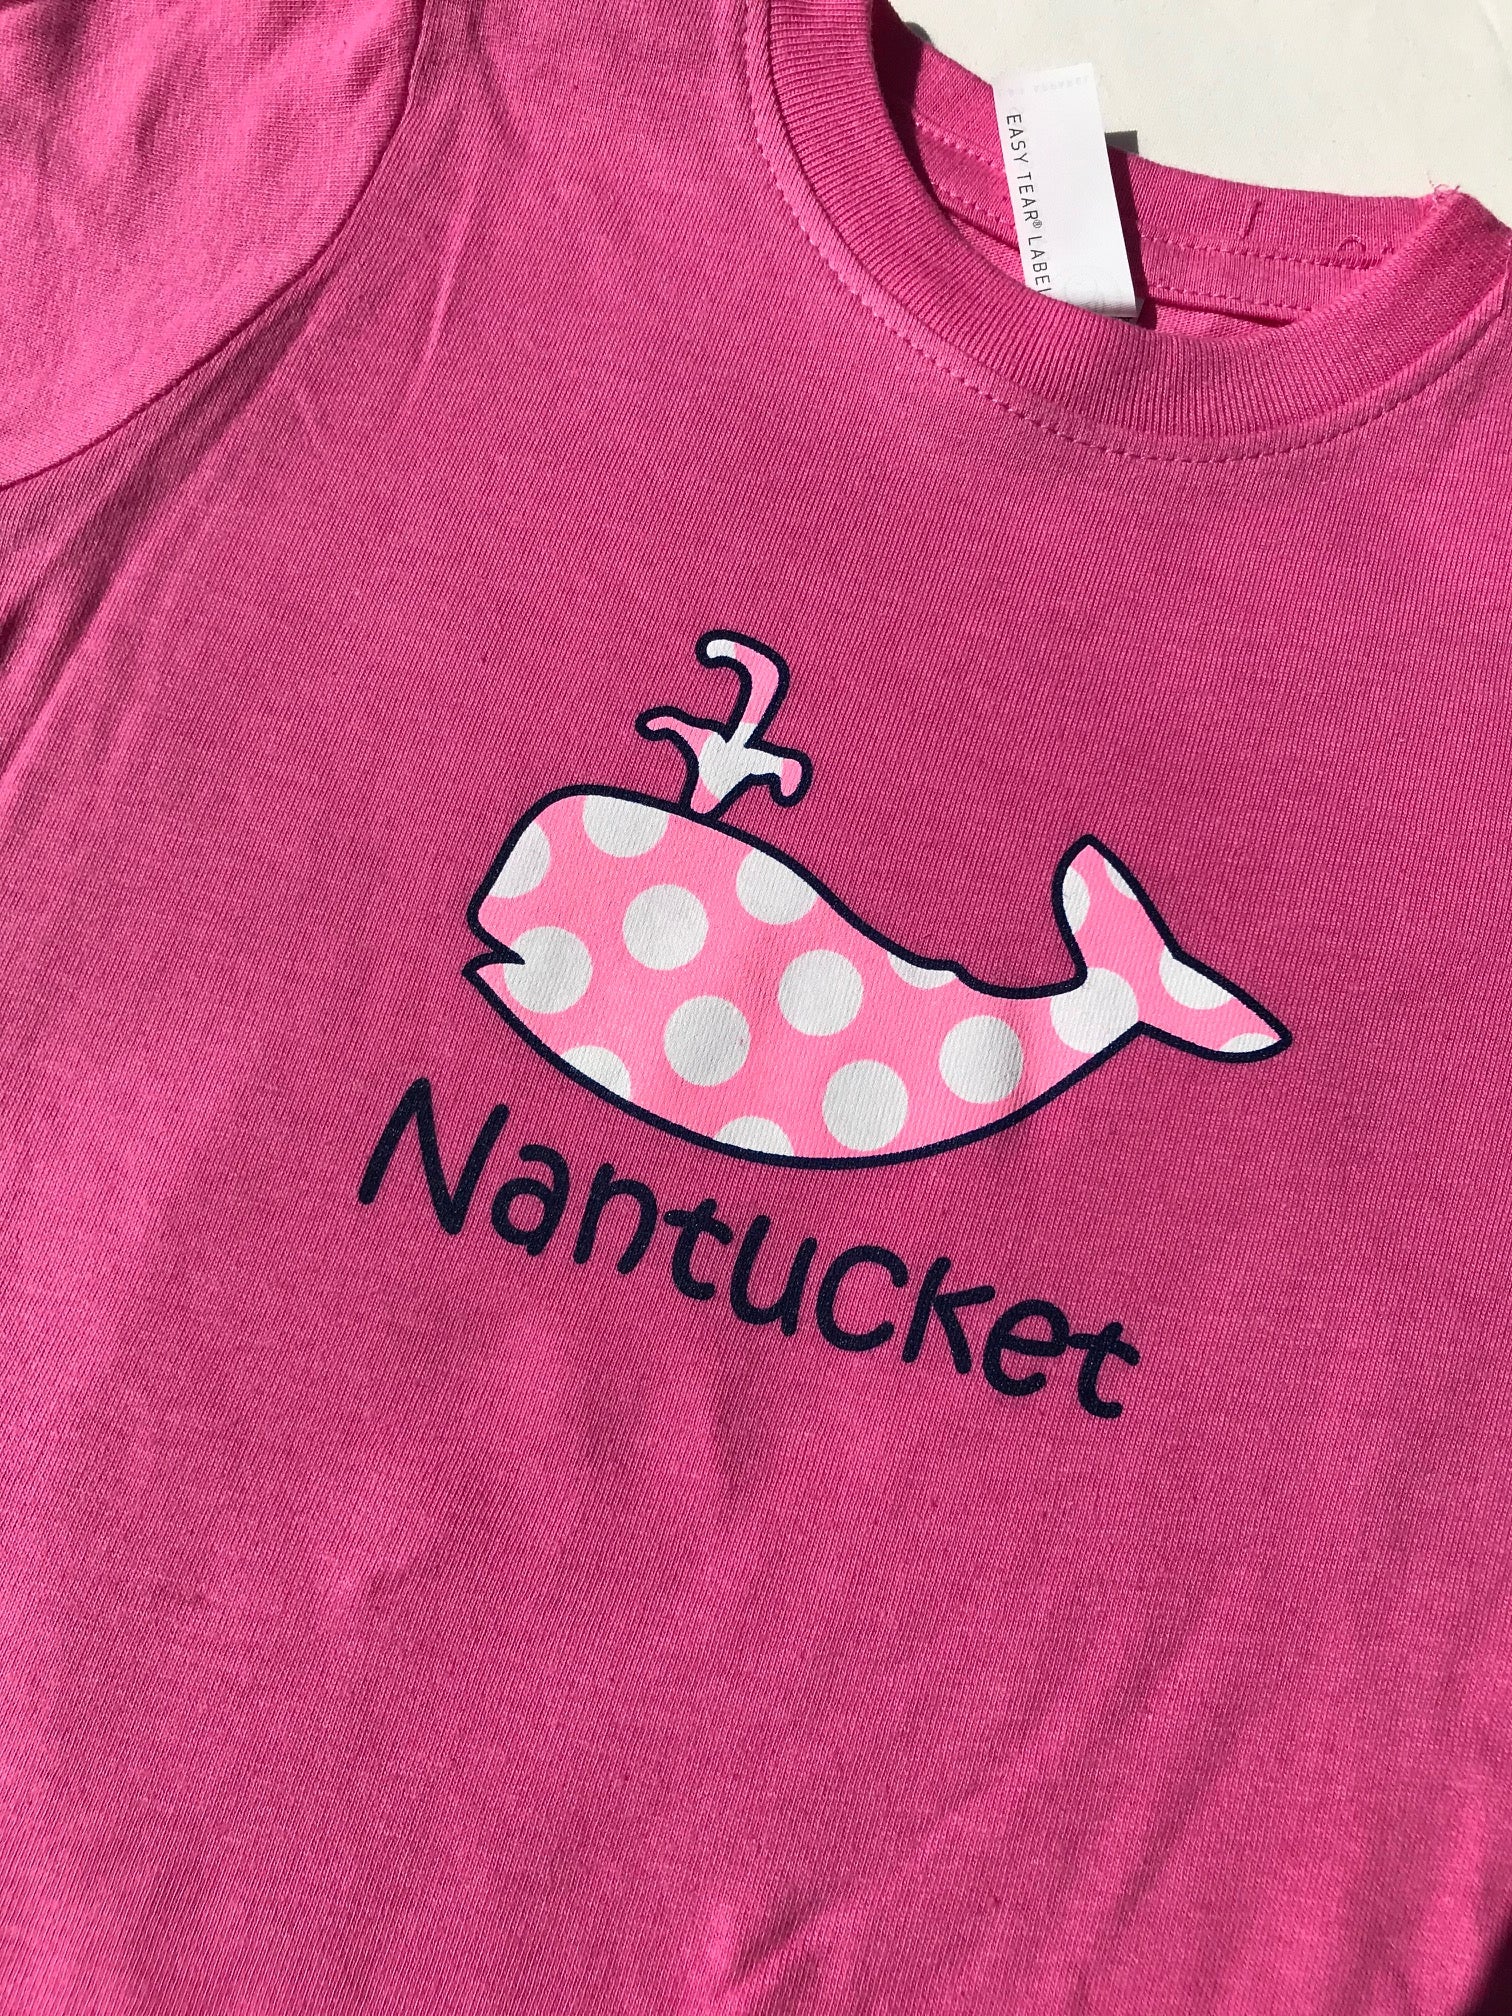 Nantucket Toddler "Pokka Dot" Whale Tee